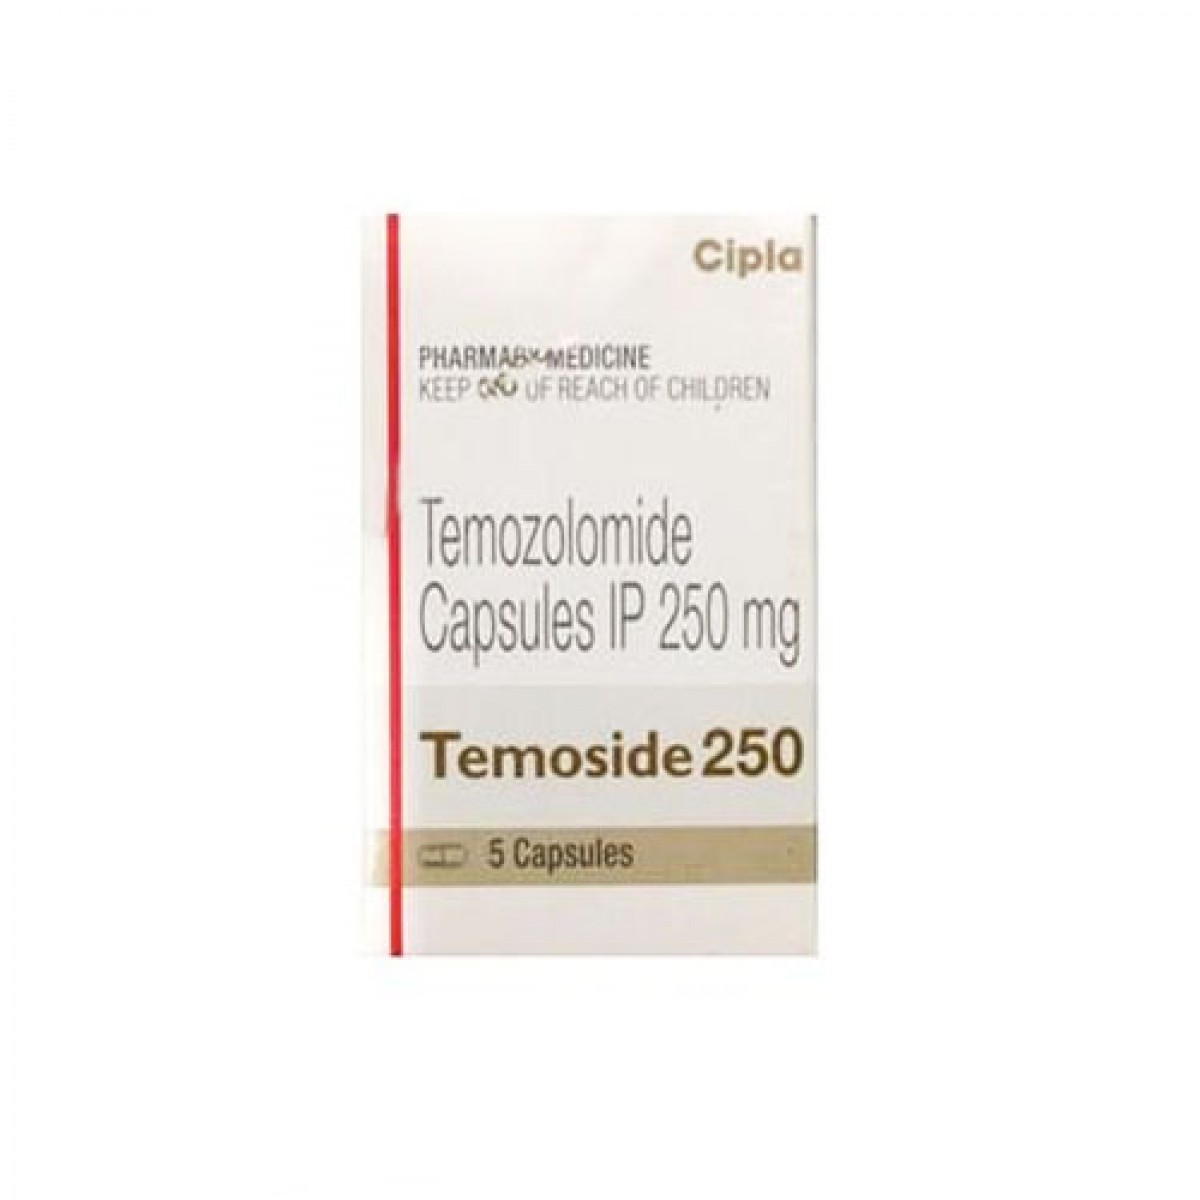 印度海德隆生产的替莫唑胺（别名： Temozolomide、TEMOZO、蒂清、TZM）